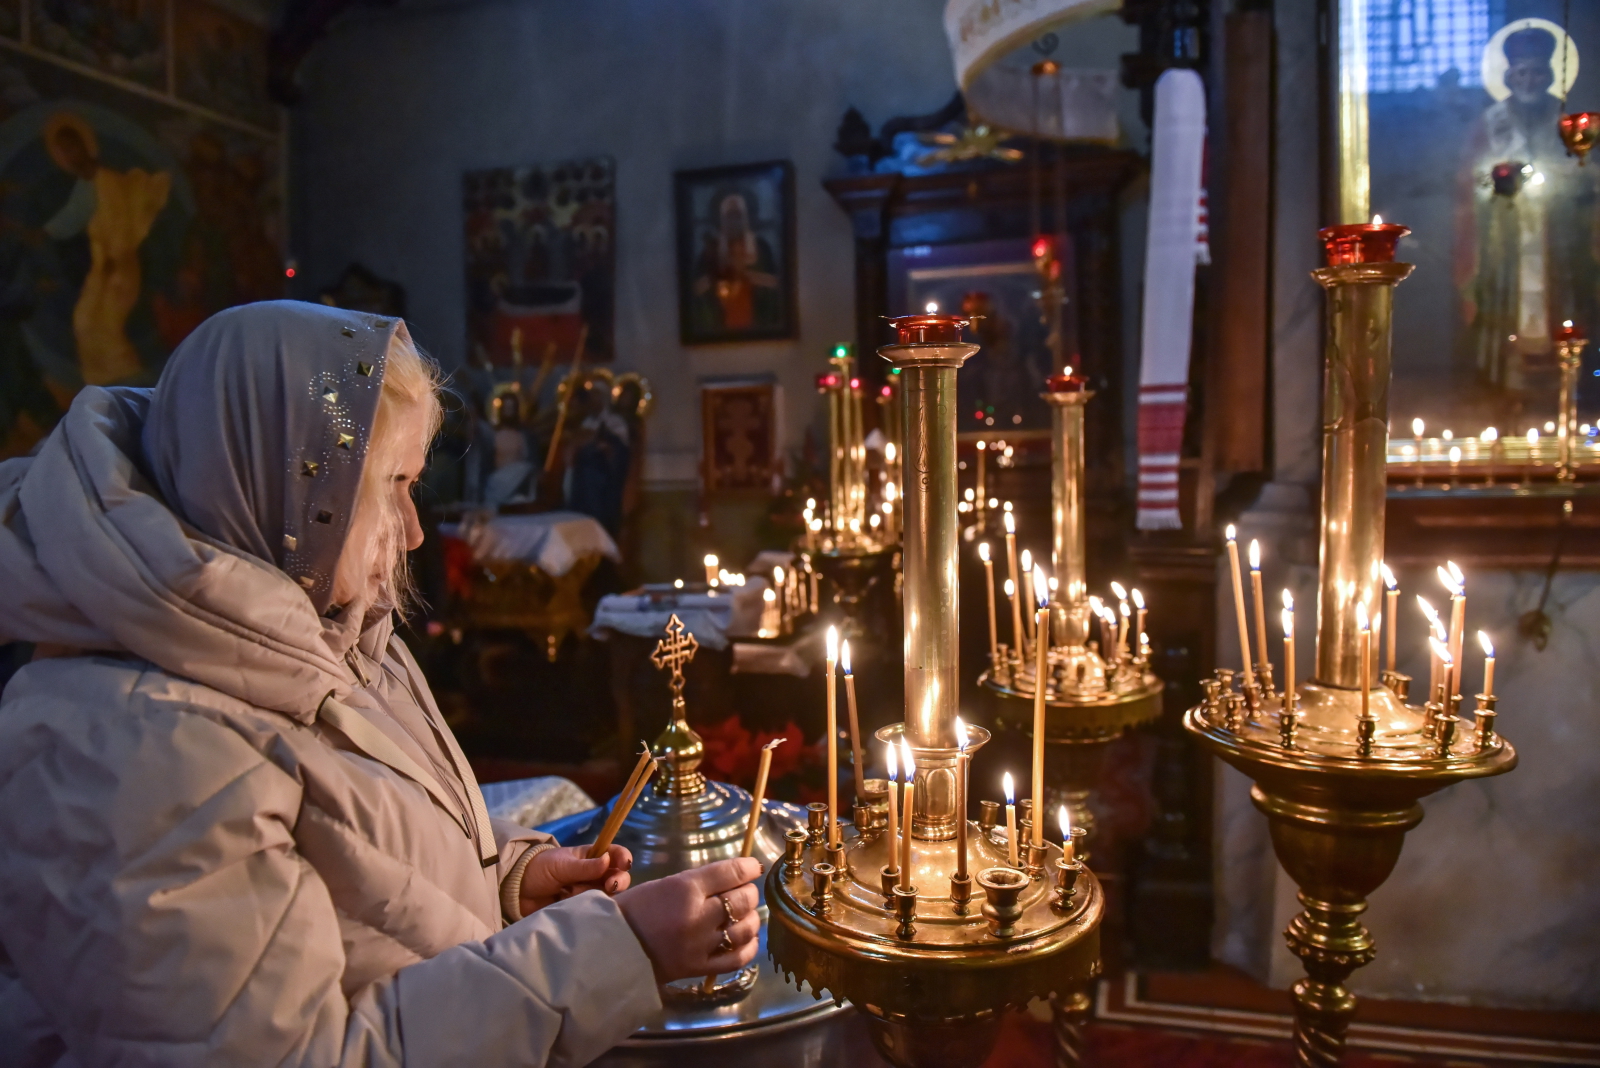 Noël orthodoxe de Lublin